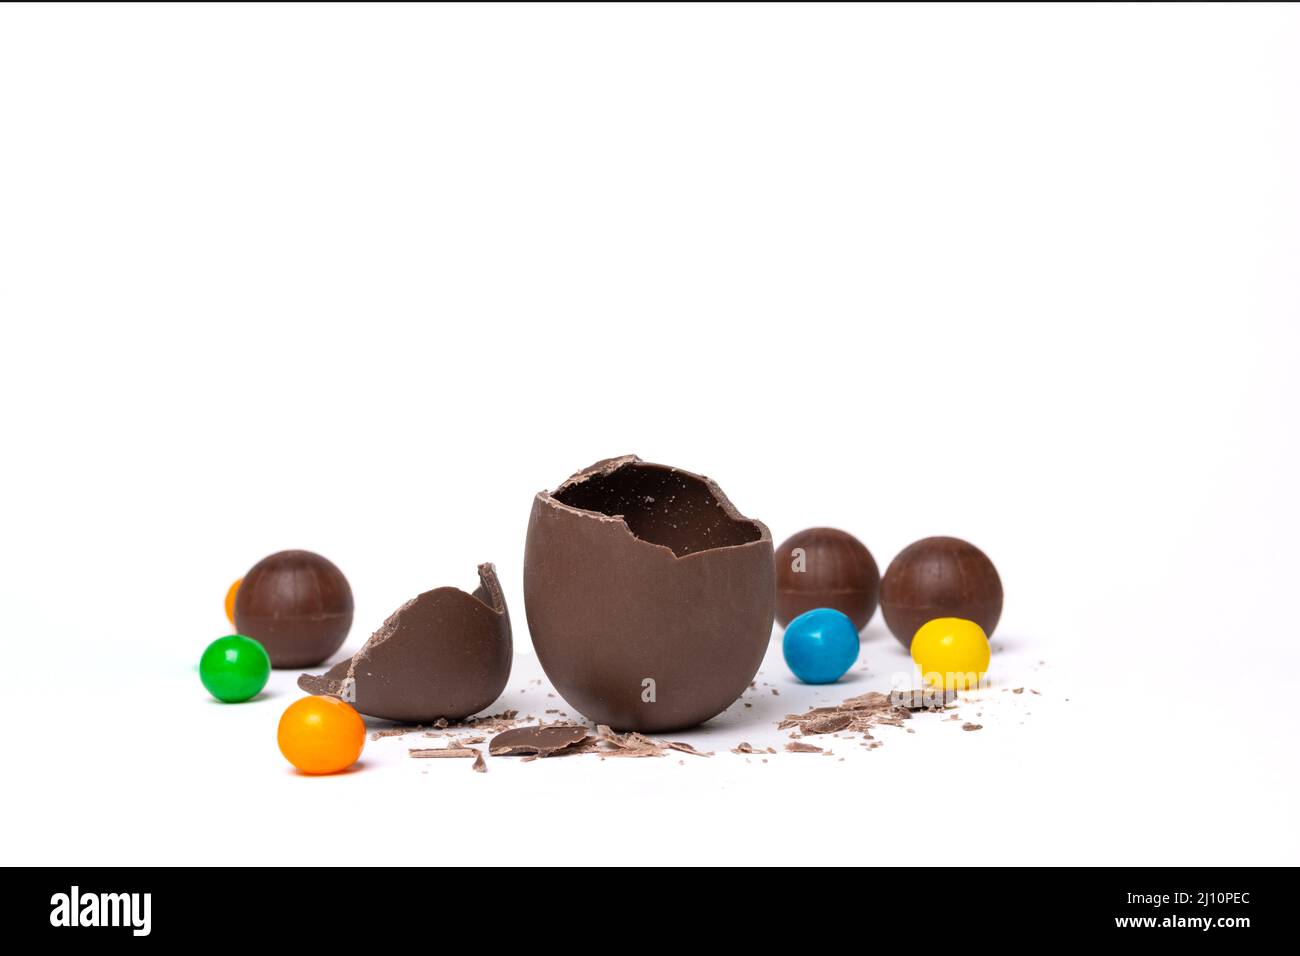 Œuf de pâques vide au chocolat craqué et bonbons ronds au chocolat colorés sur fond blanc, espace de copie. Chocolat pour les enfants. Concept de Pâques. Banque D'Images